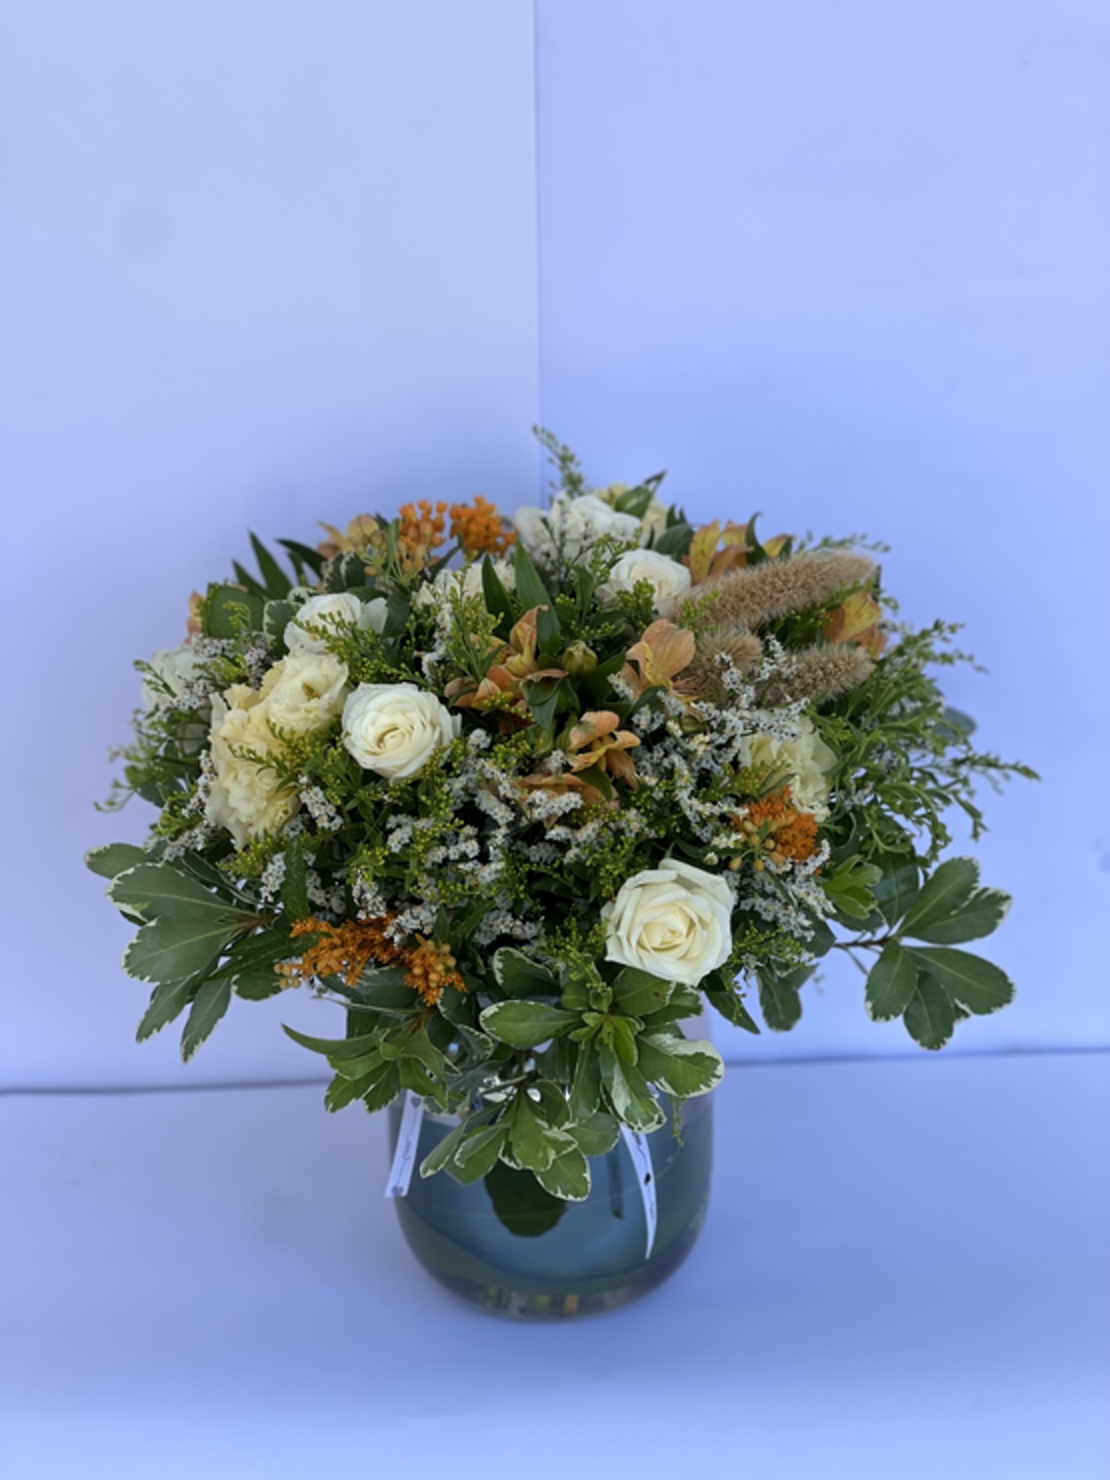 A wild flower arrangement in a vase